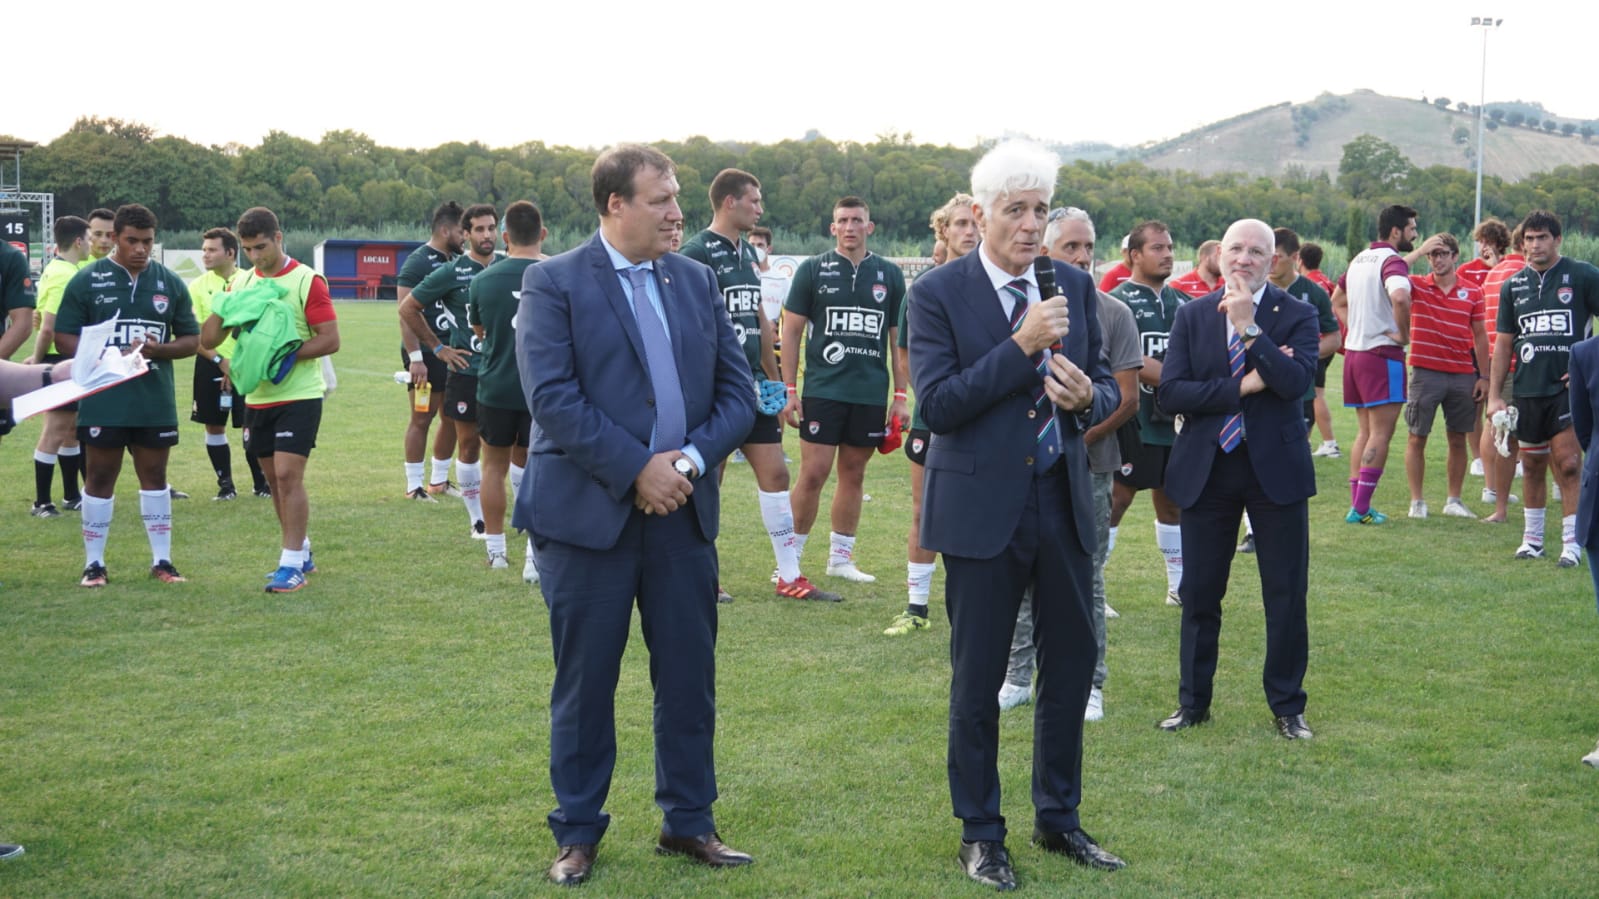 Incontro di rugby Fiamme Oro-Colorno a S. Benedetto del Tronto 11-9-2021